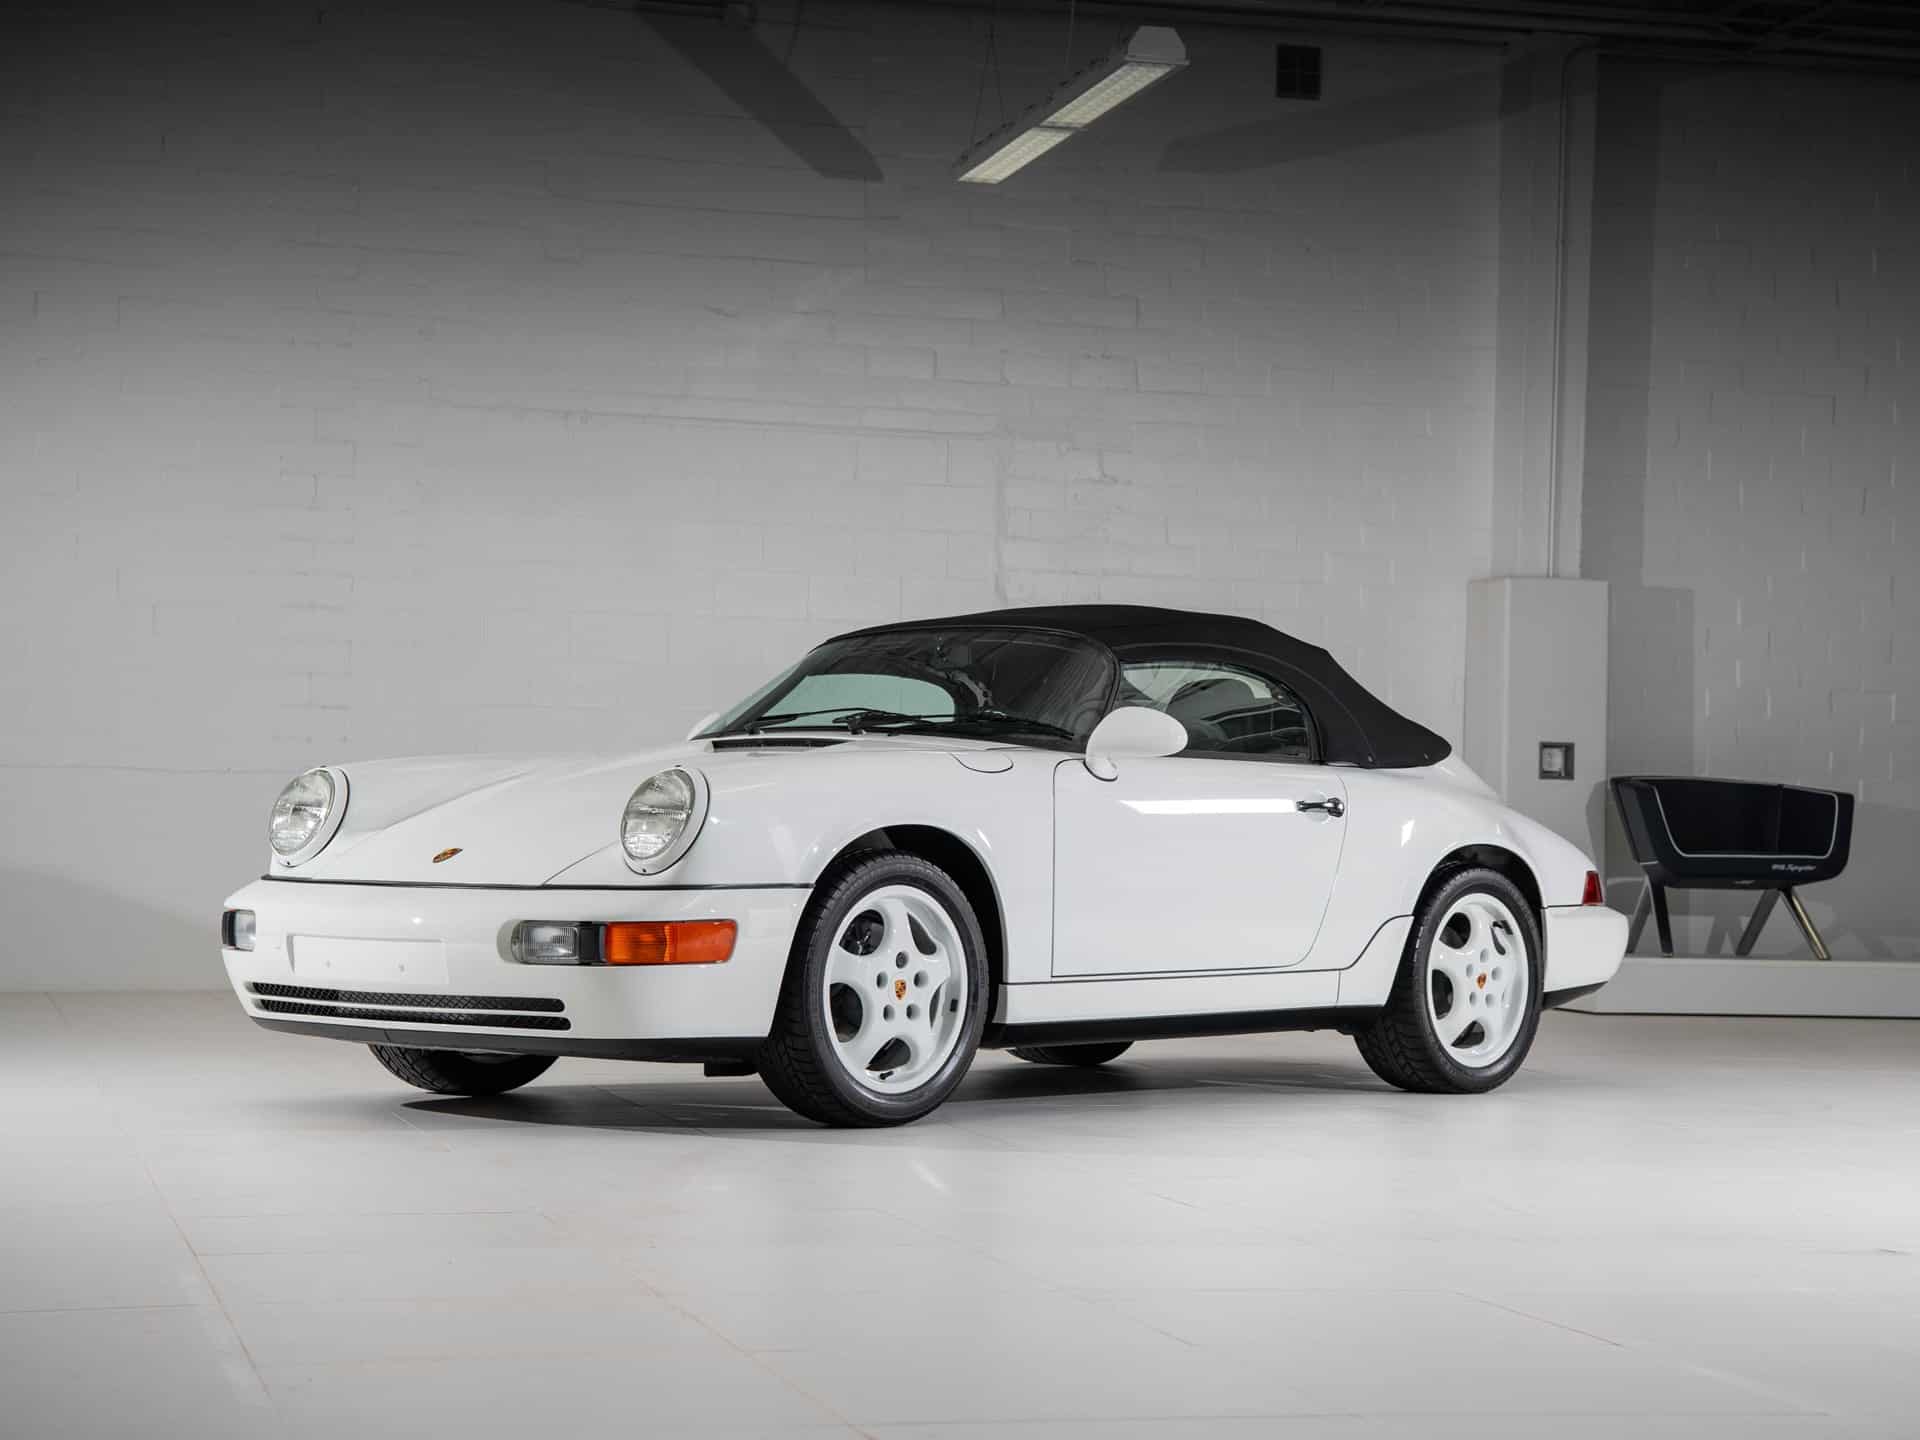 На продажу выставлен Porsche 911 Carrera 1993 года выпуска.